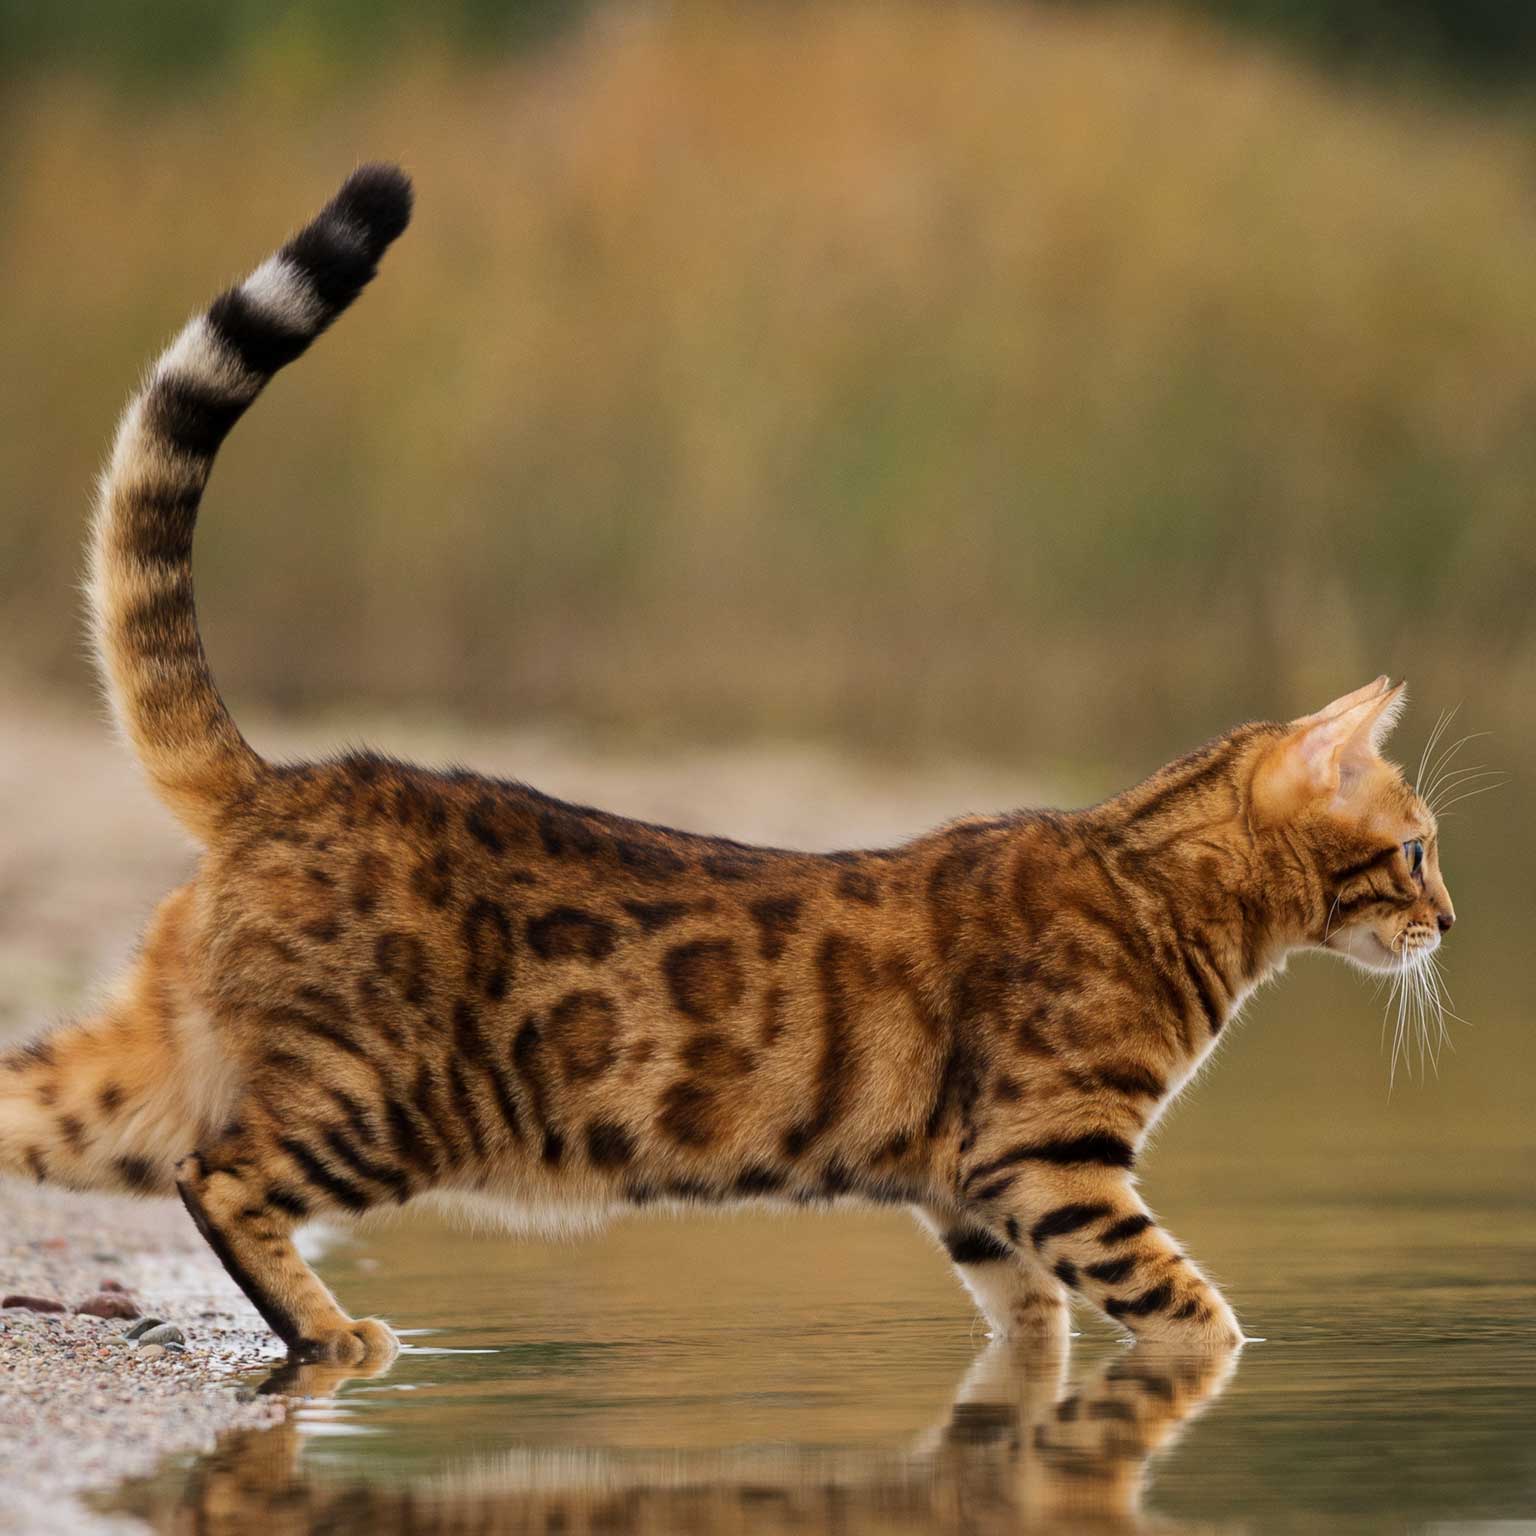 Cat in water